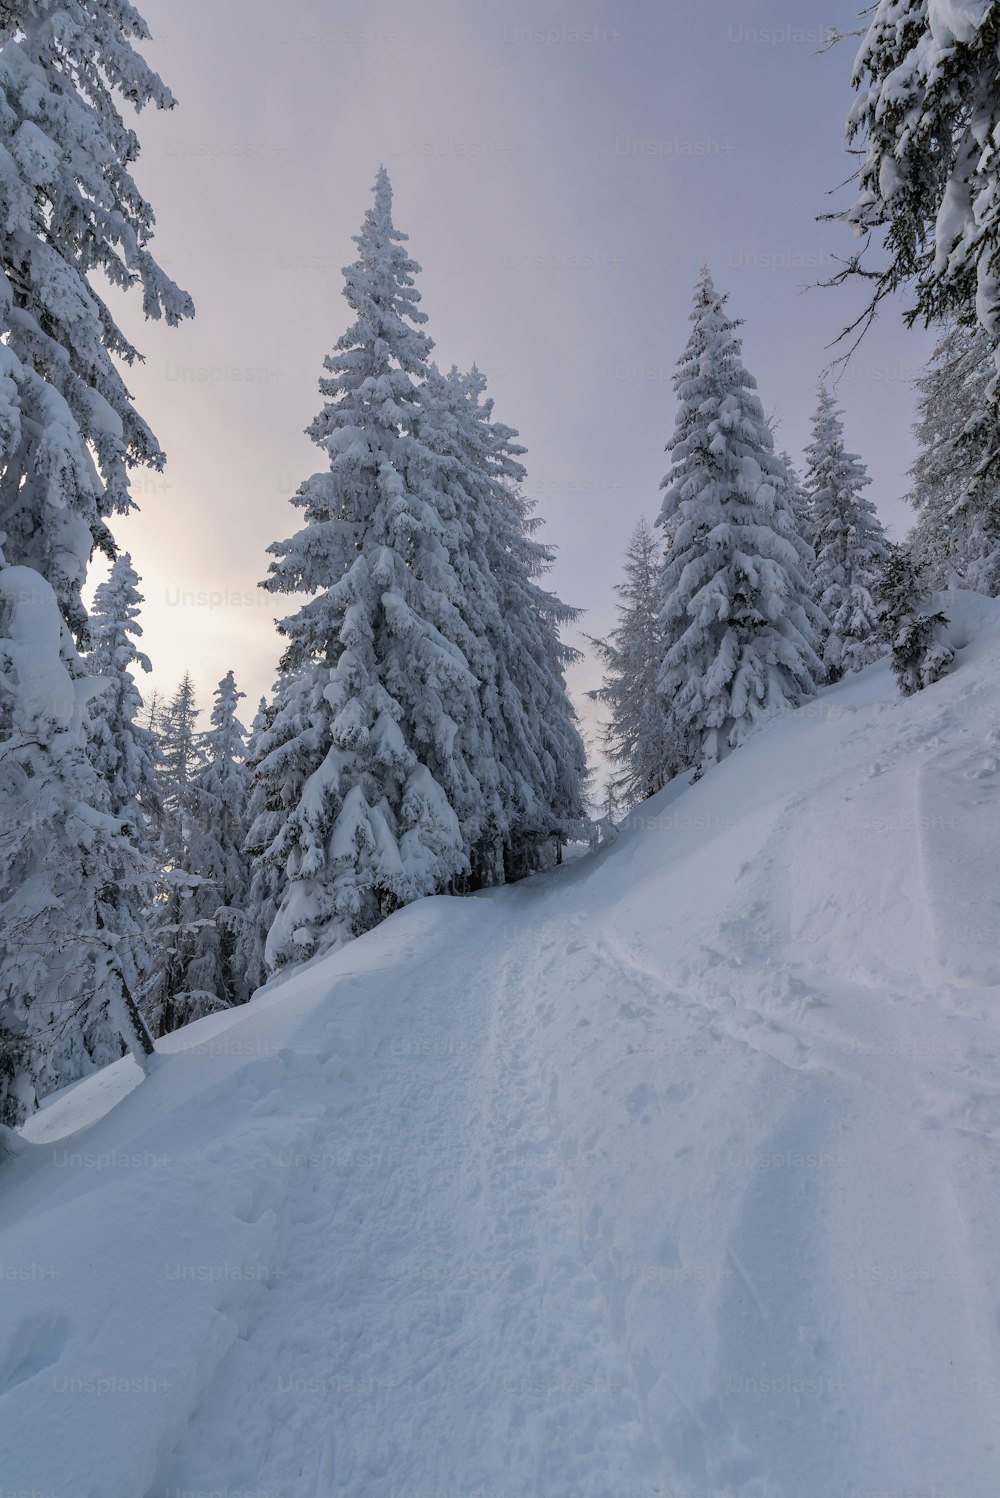 Una persona montando esquís por una pendiente cubierta de nieve